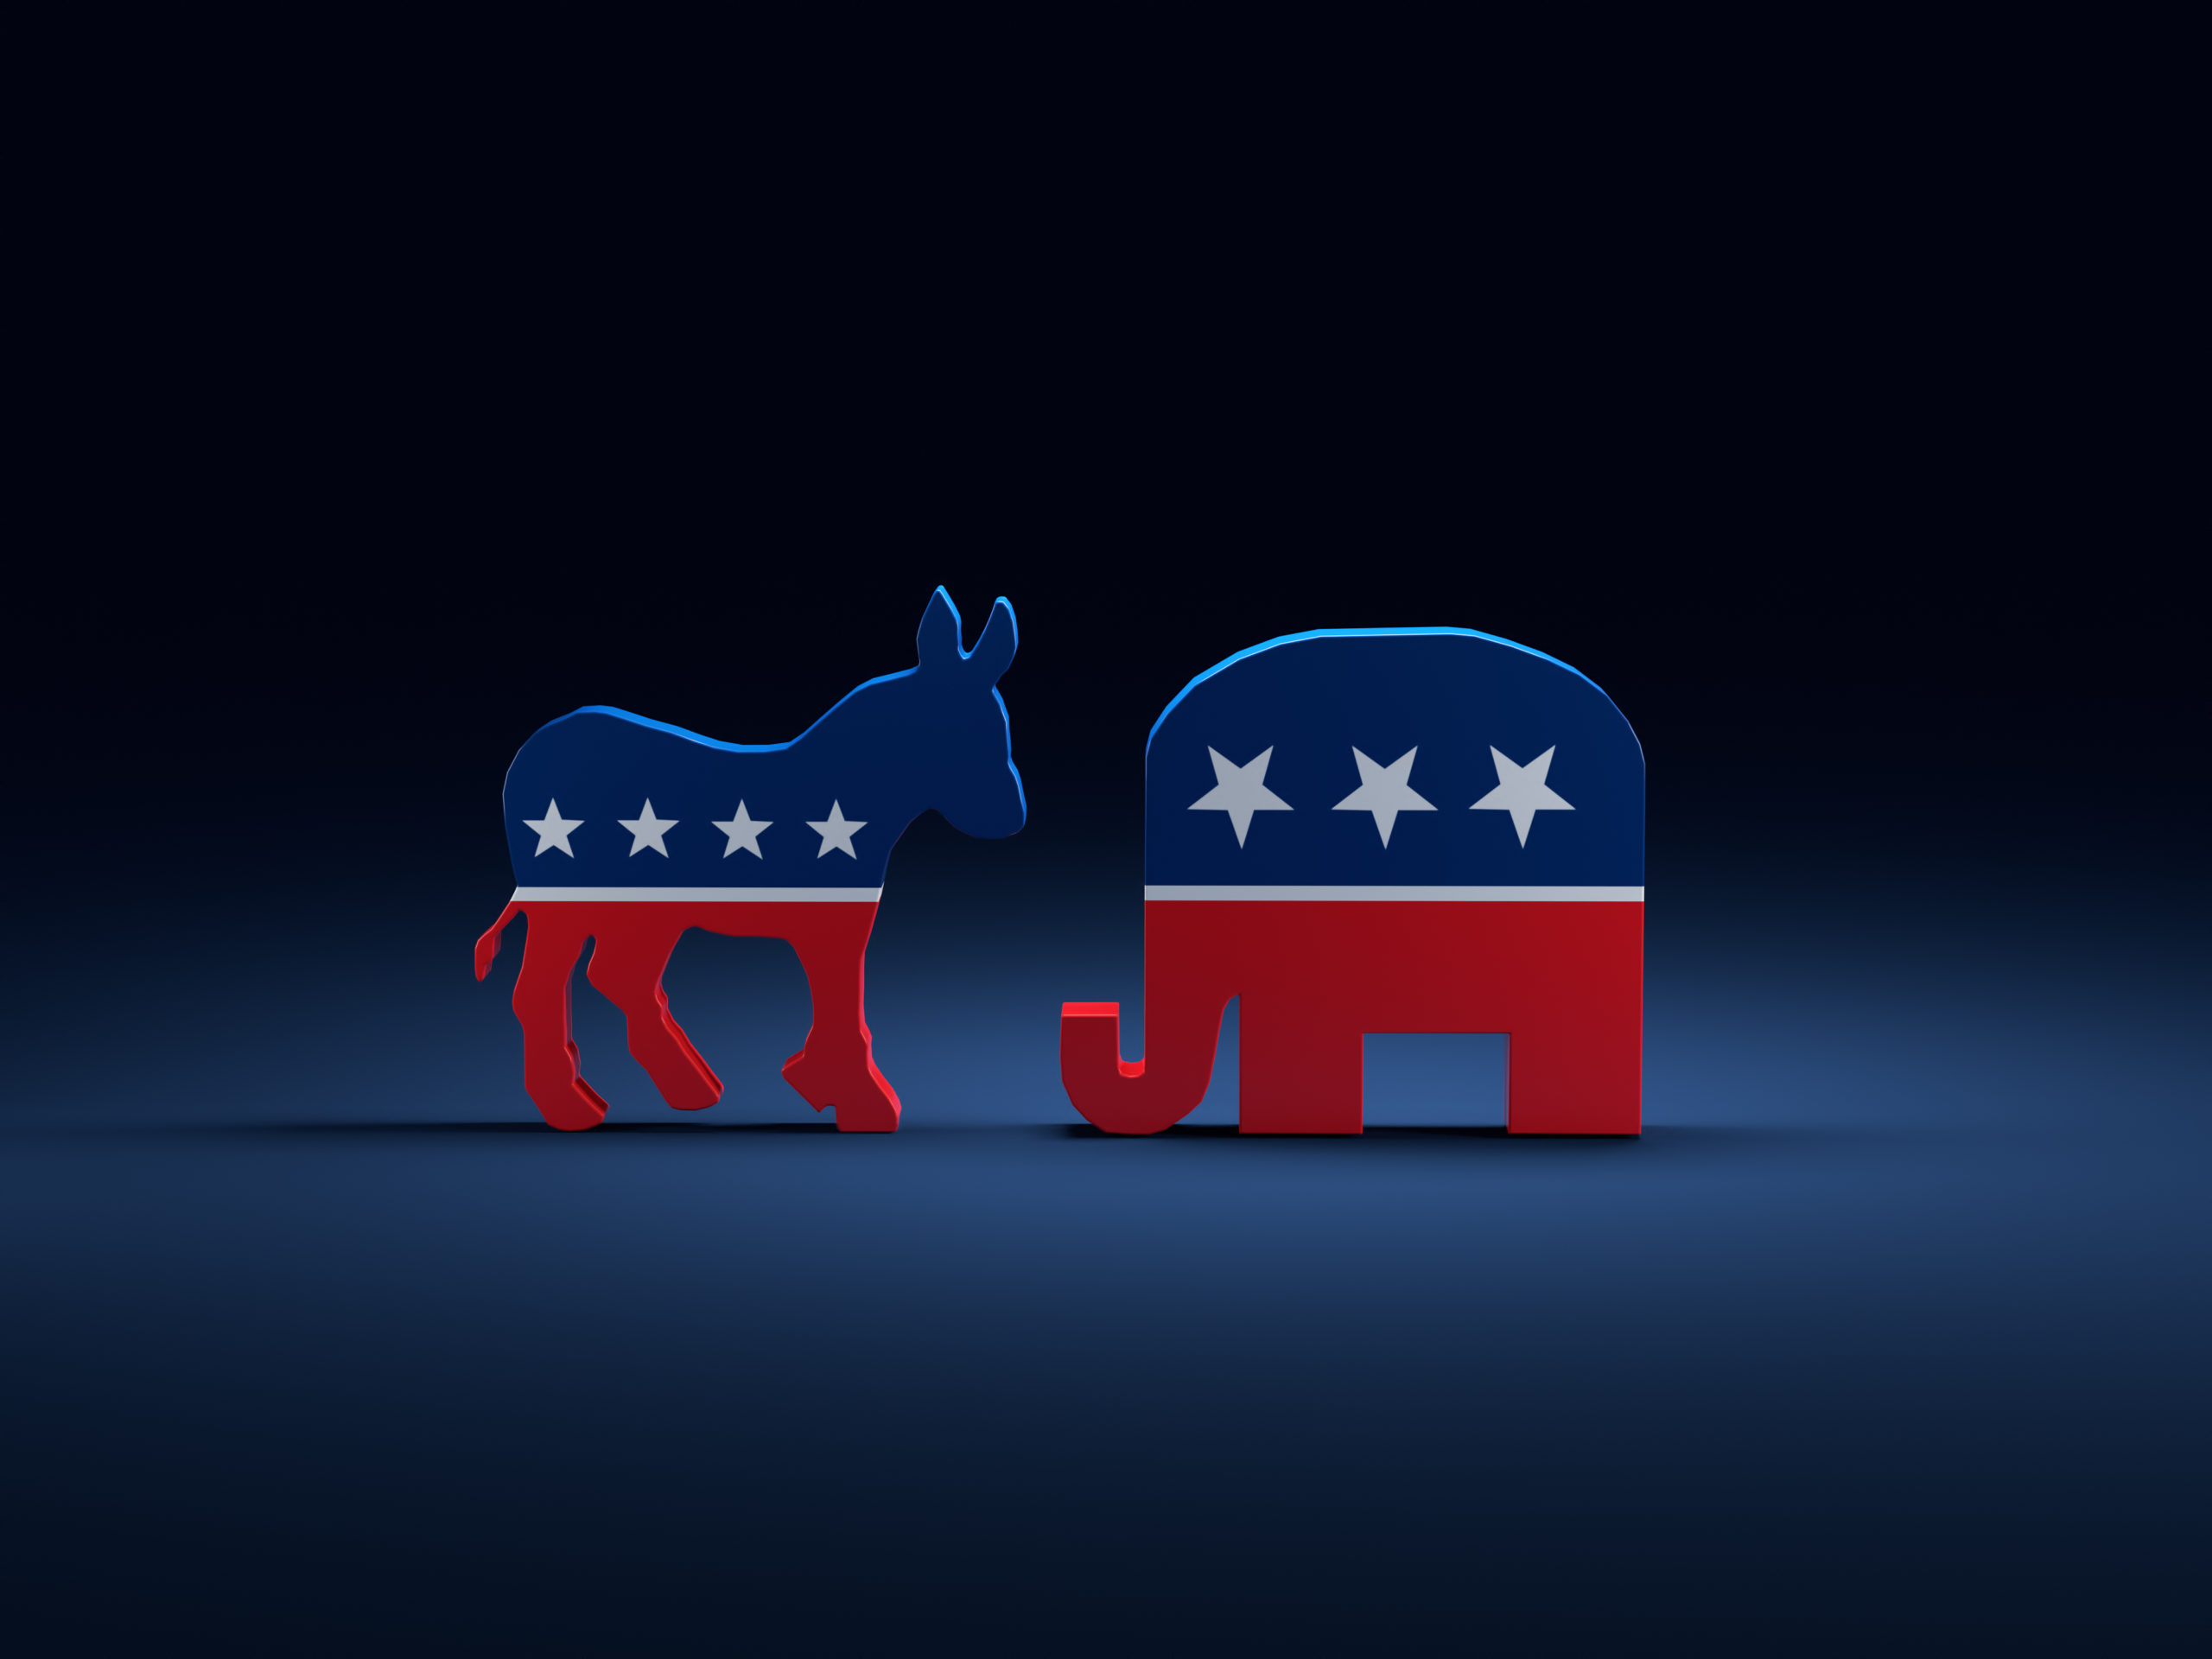 3d,Render,Of,Democrats,Donkey,Vs,Republicans,Elephant,Symbols,On